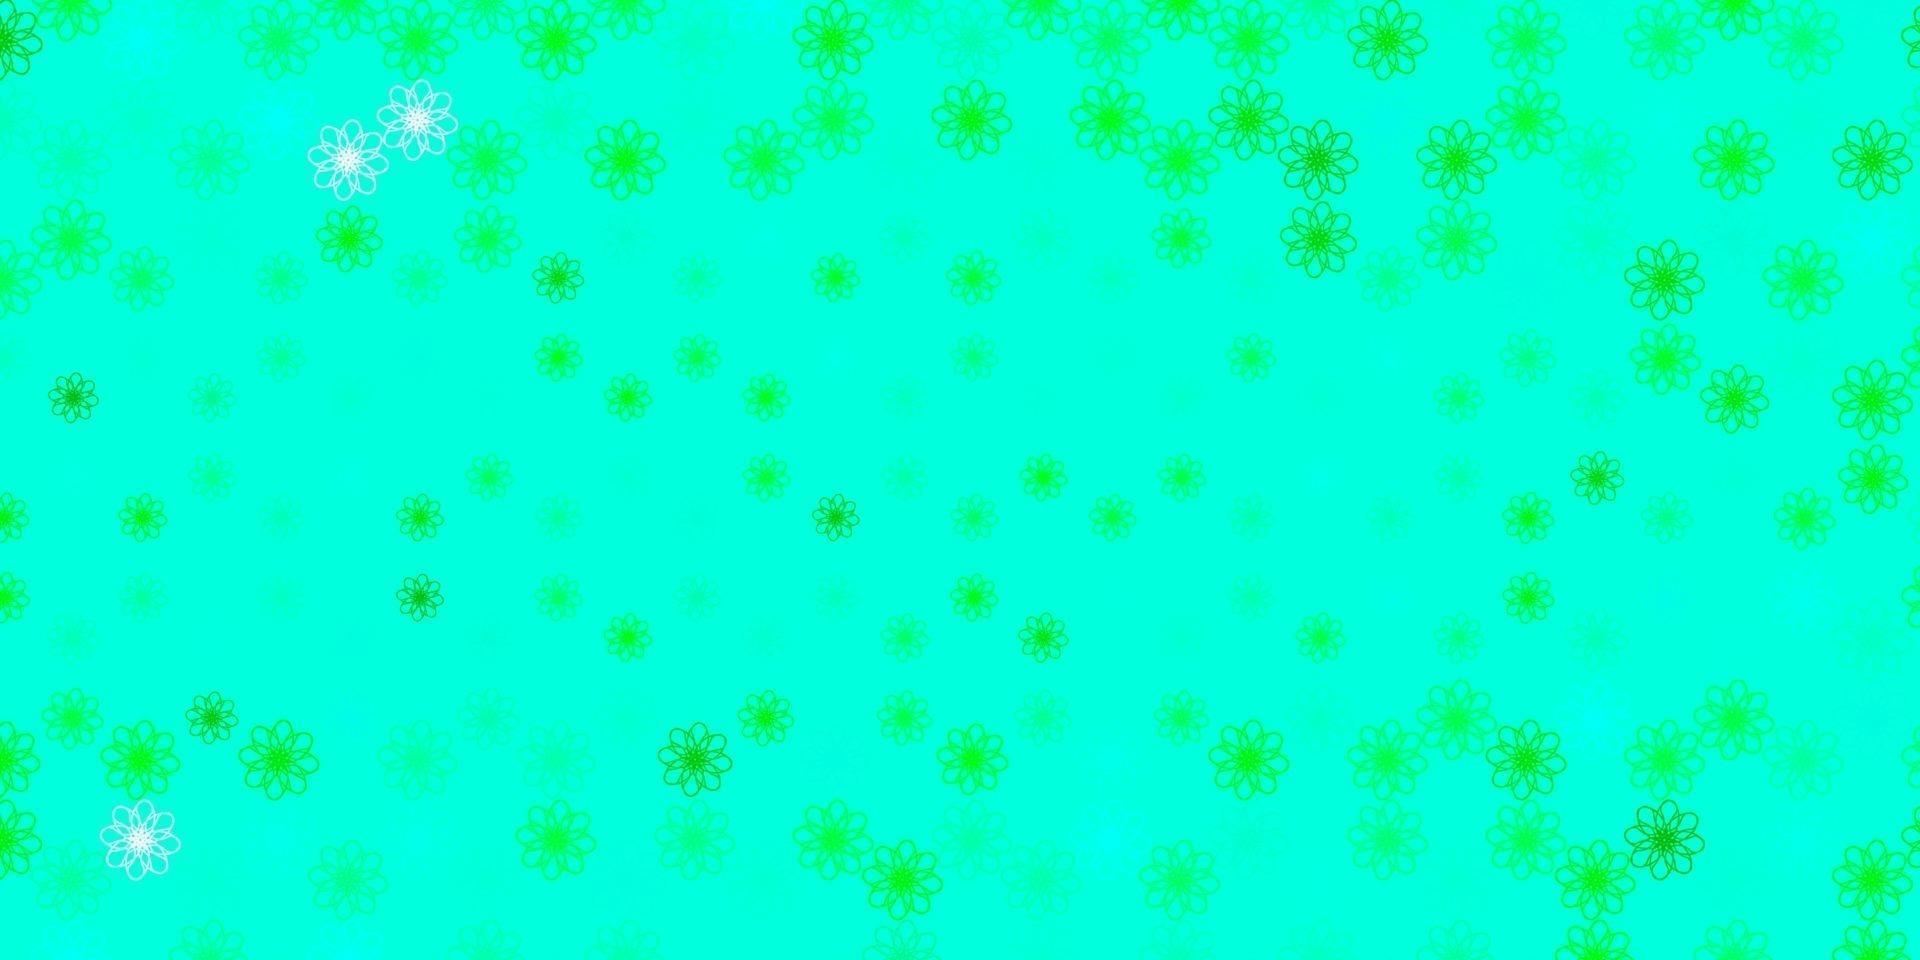 patrón de vector verde claro con líneas curvas.